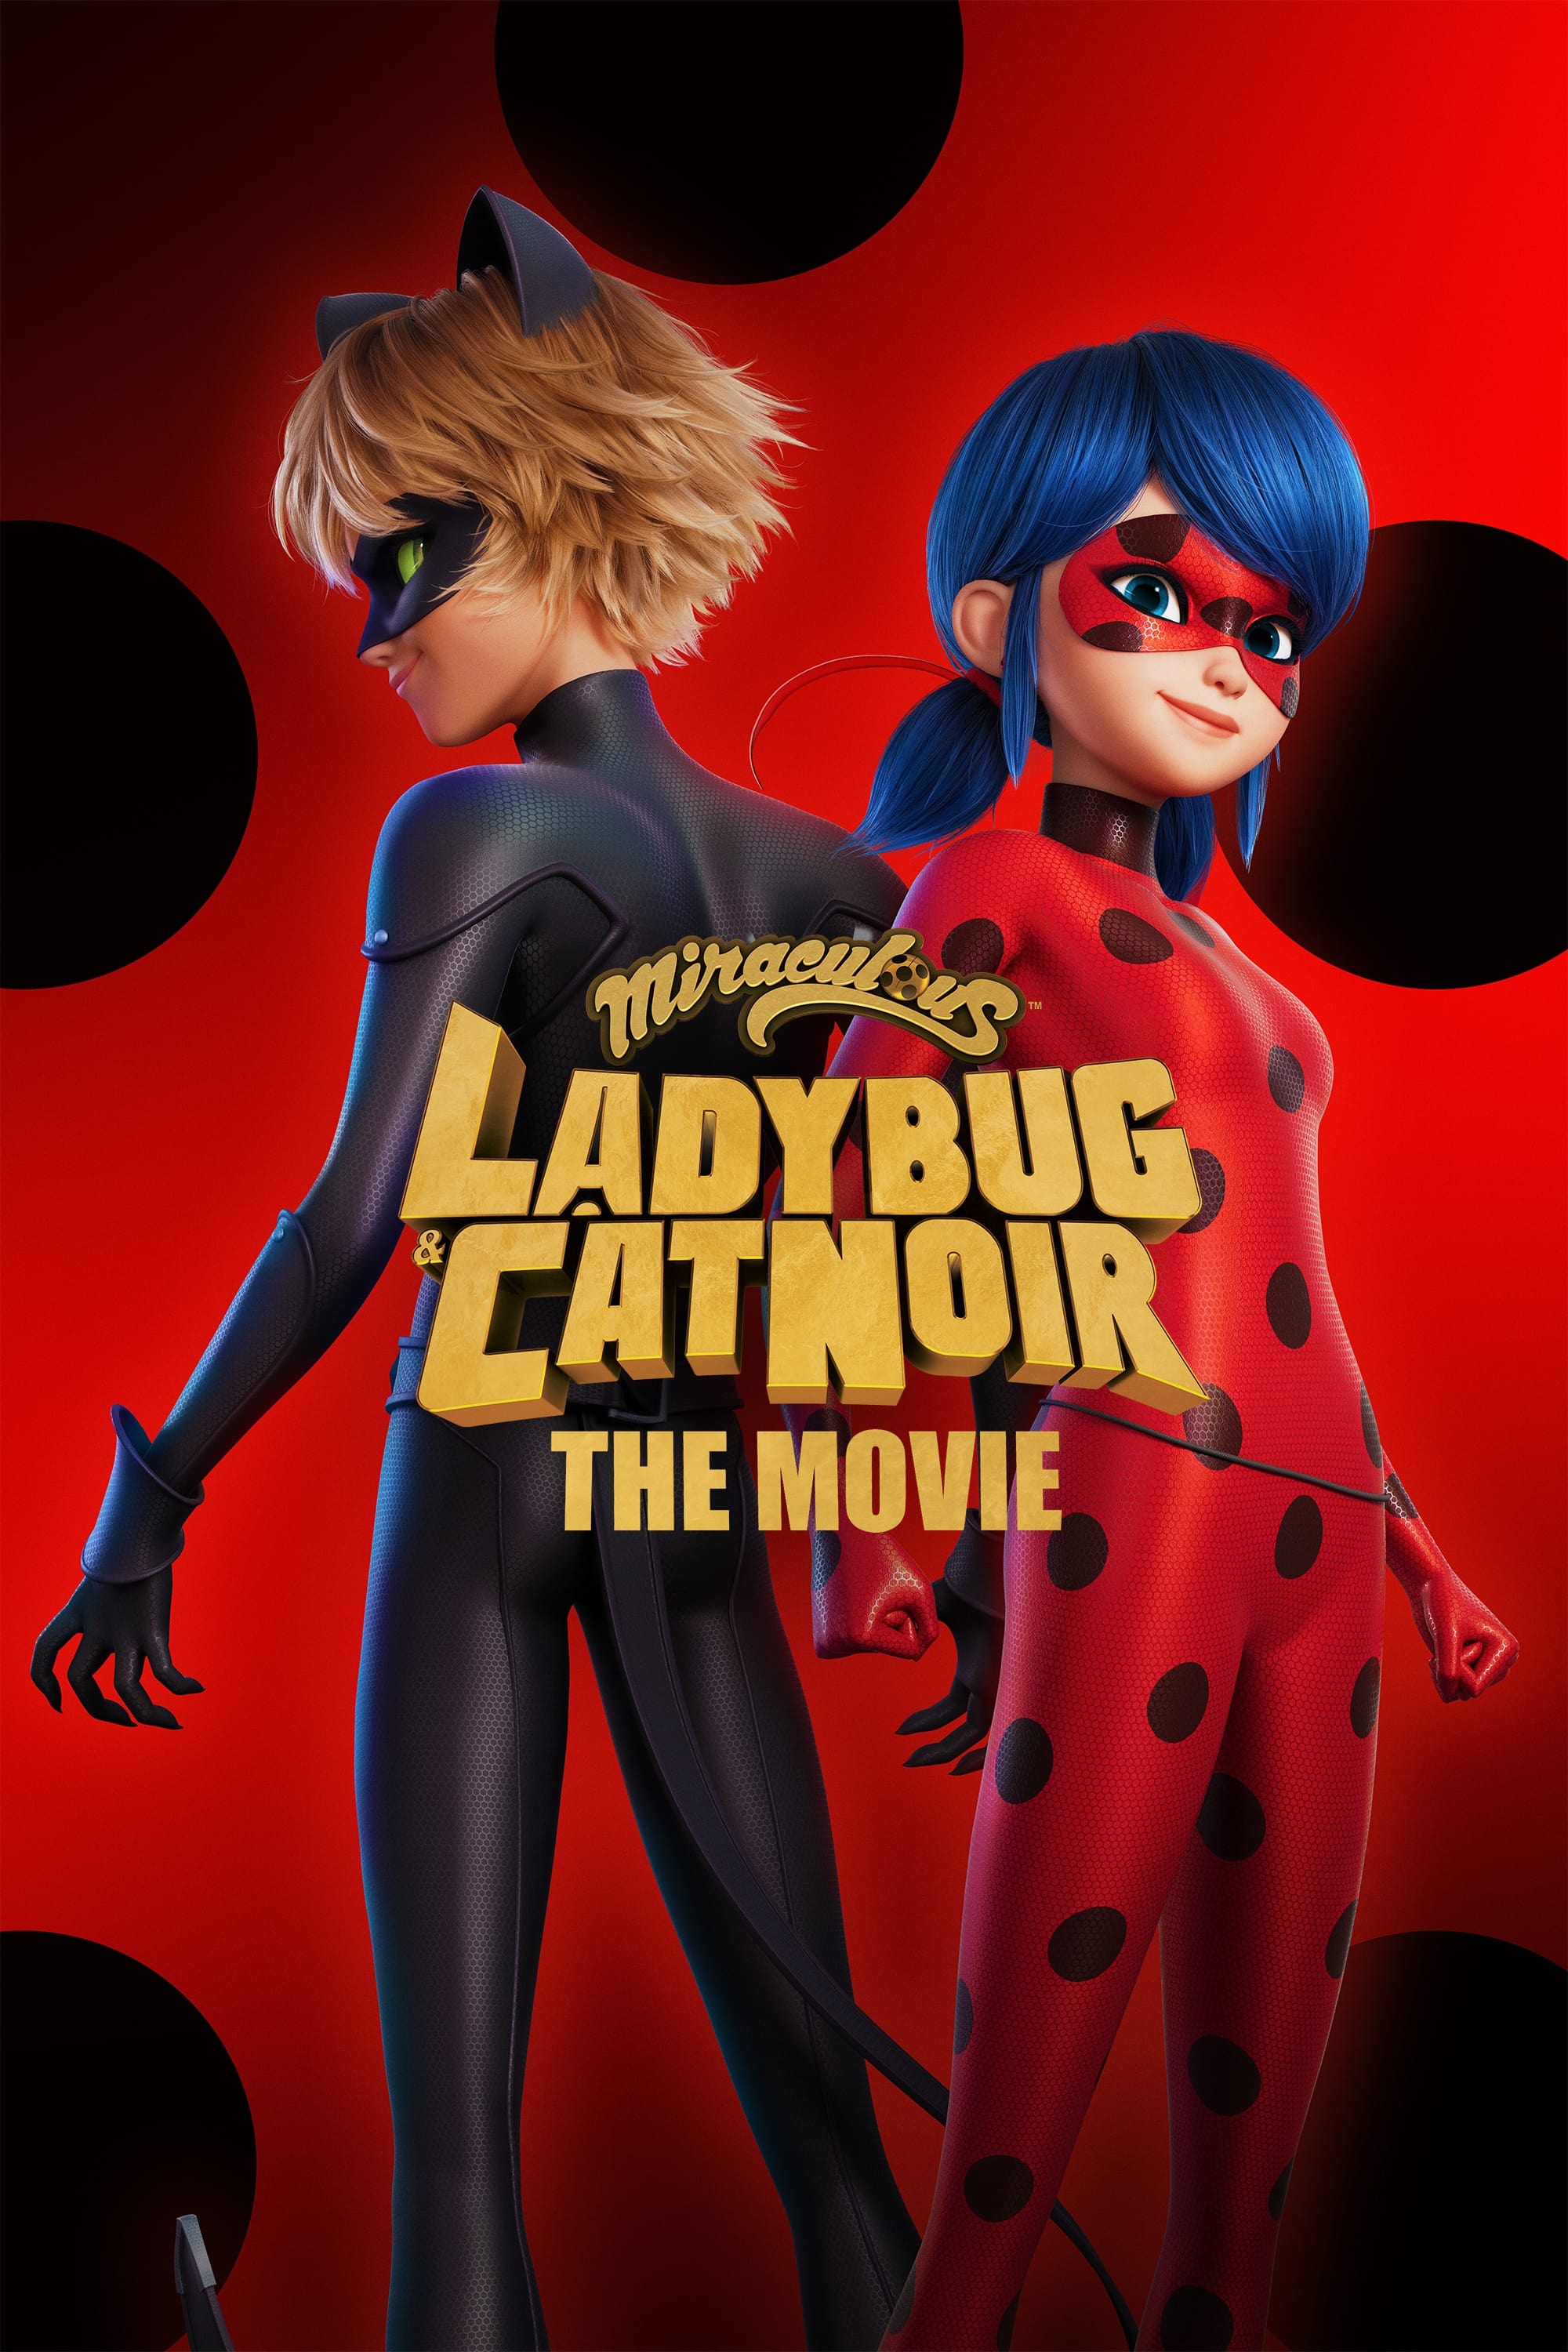 Miraculous: As Aventuras de Ladybug - O Filme